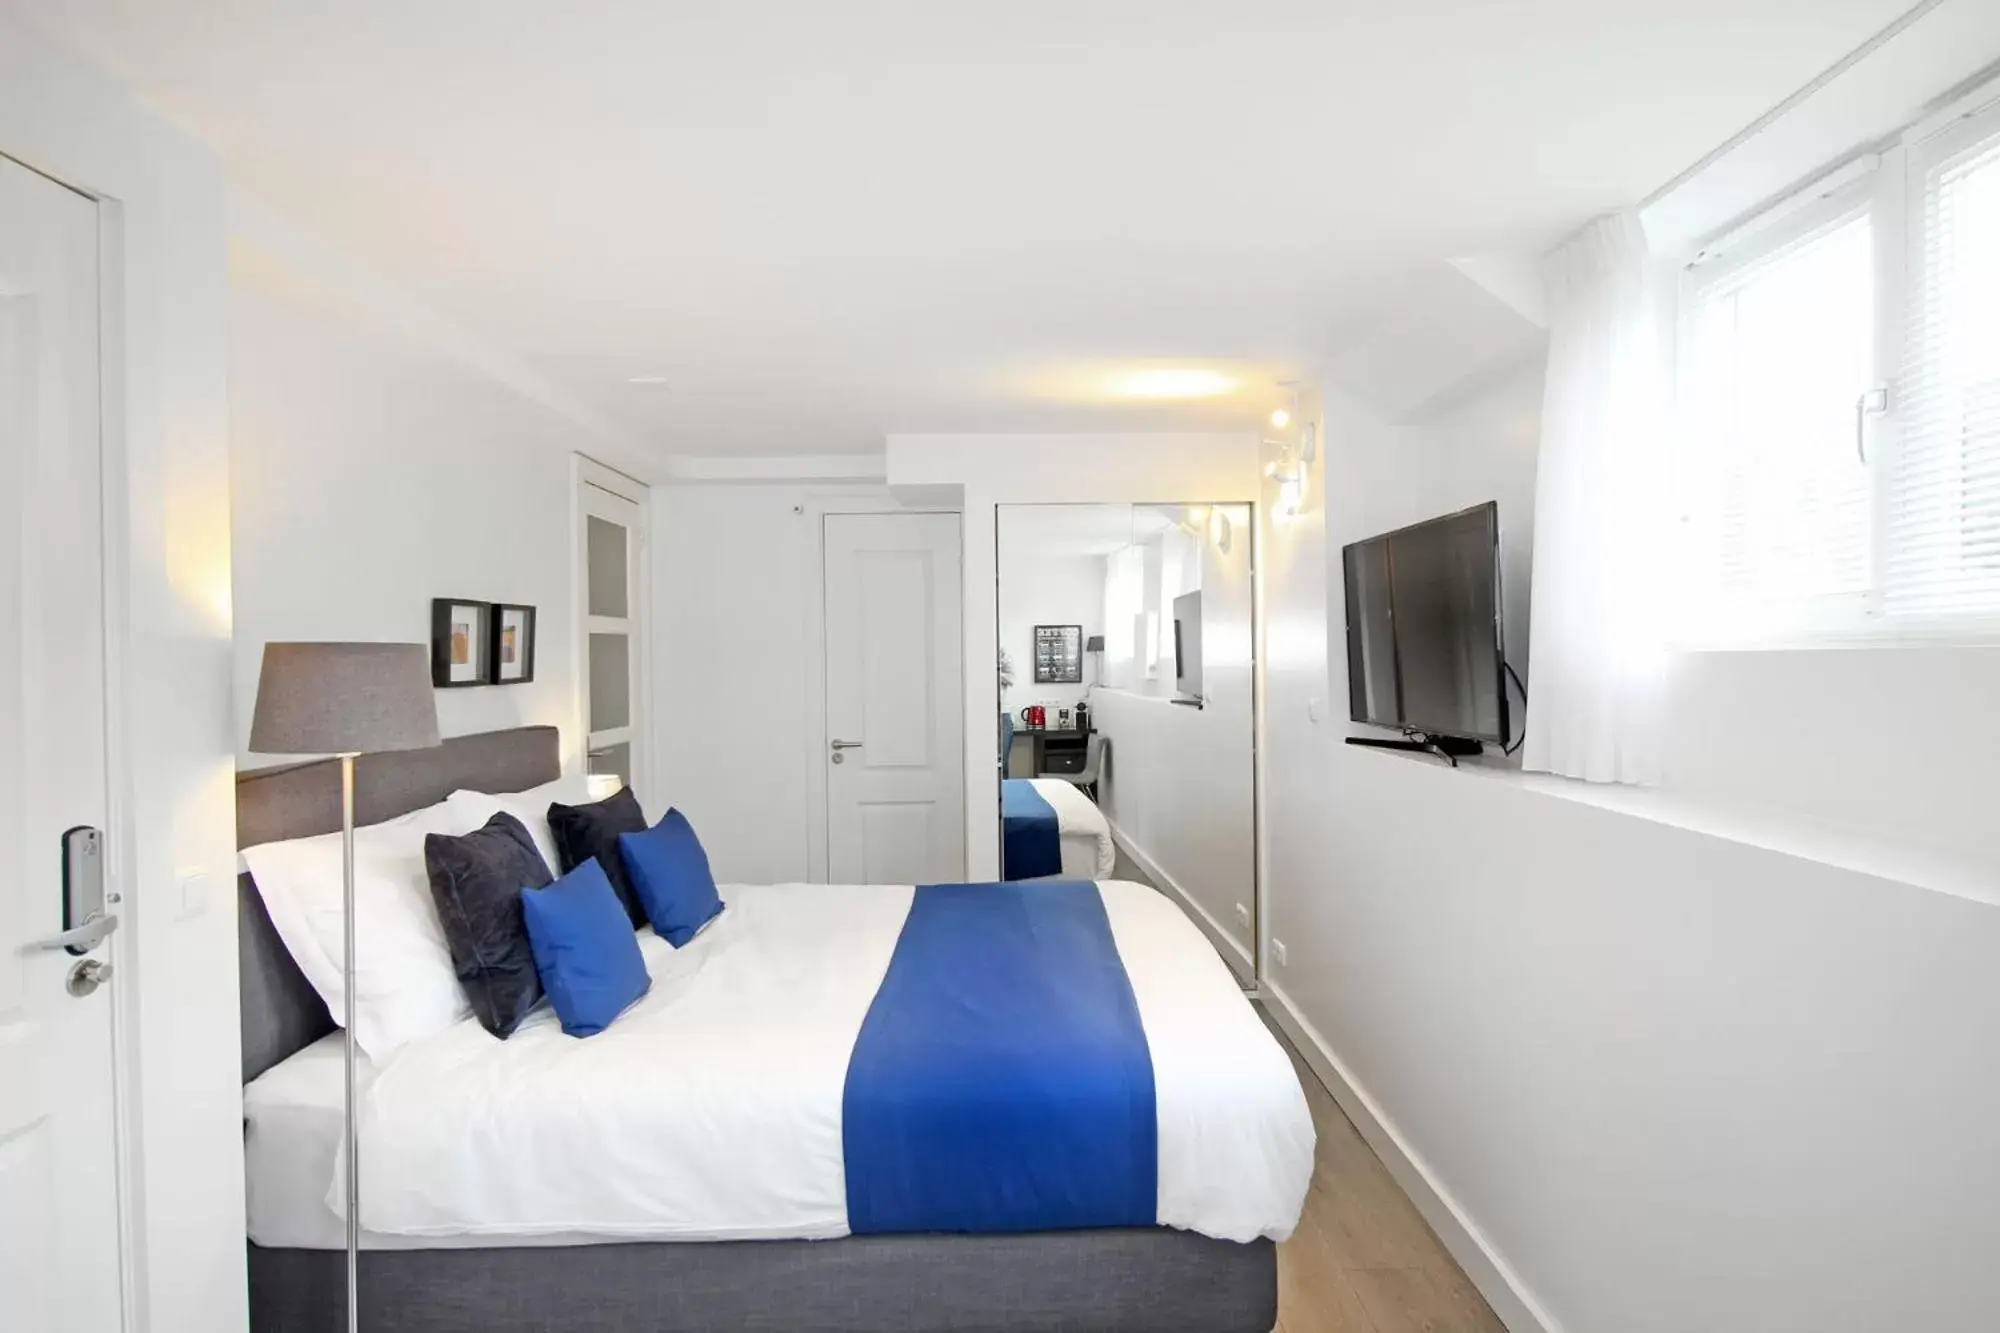 Bed in Romantic suite in Jordaan near CS